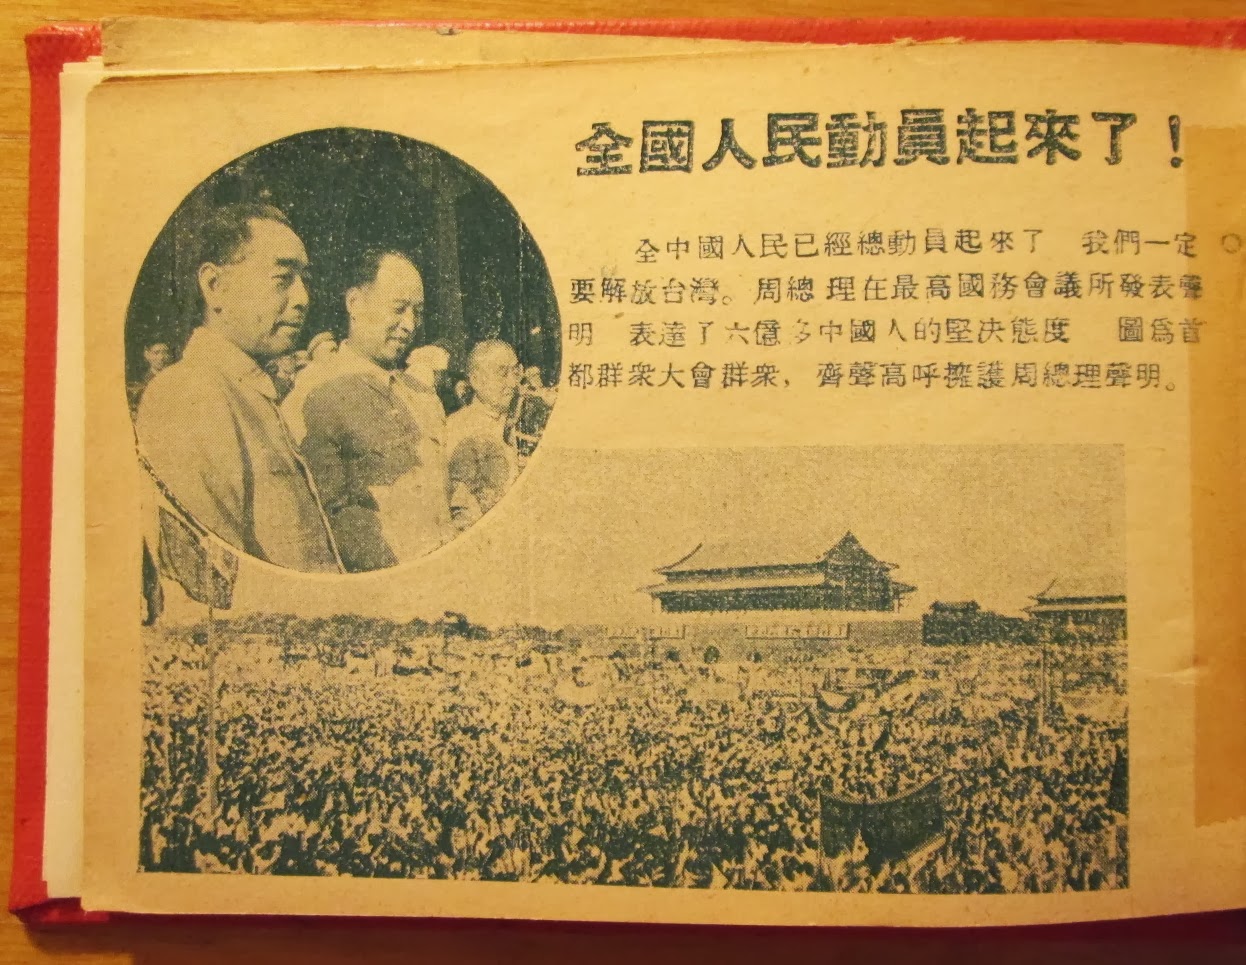 全中國人民動員起來解放台灣